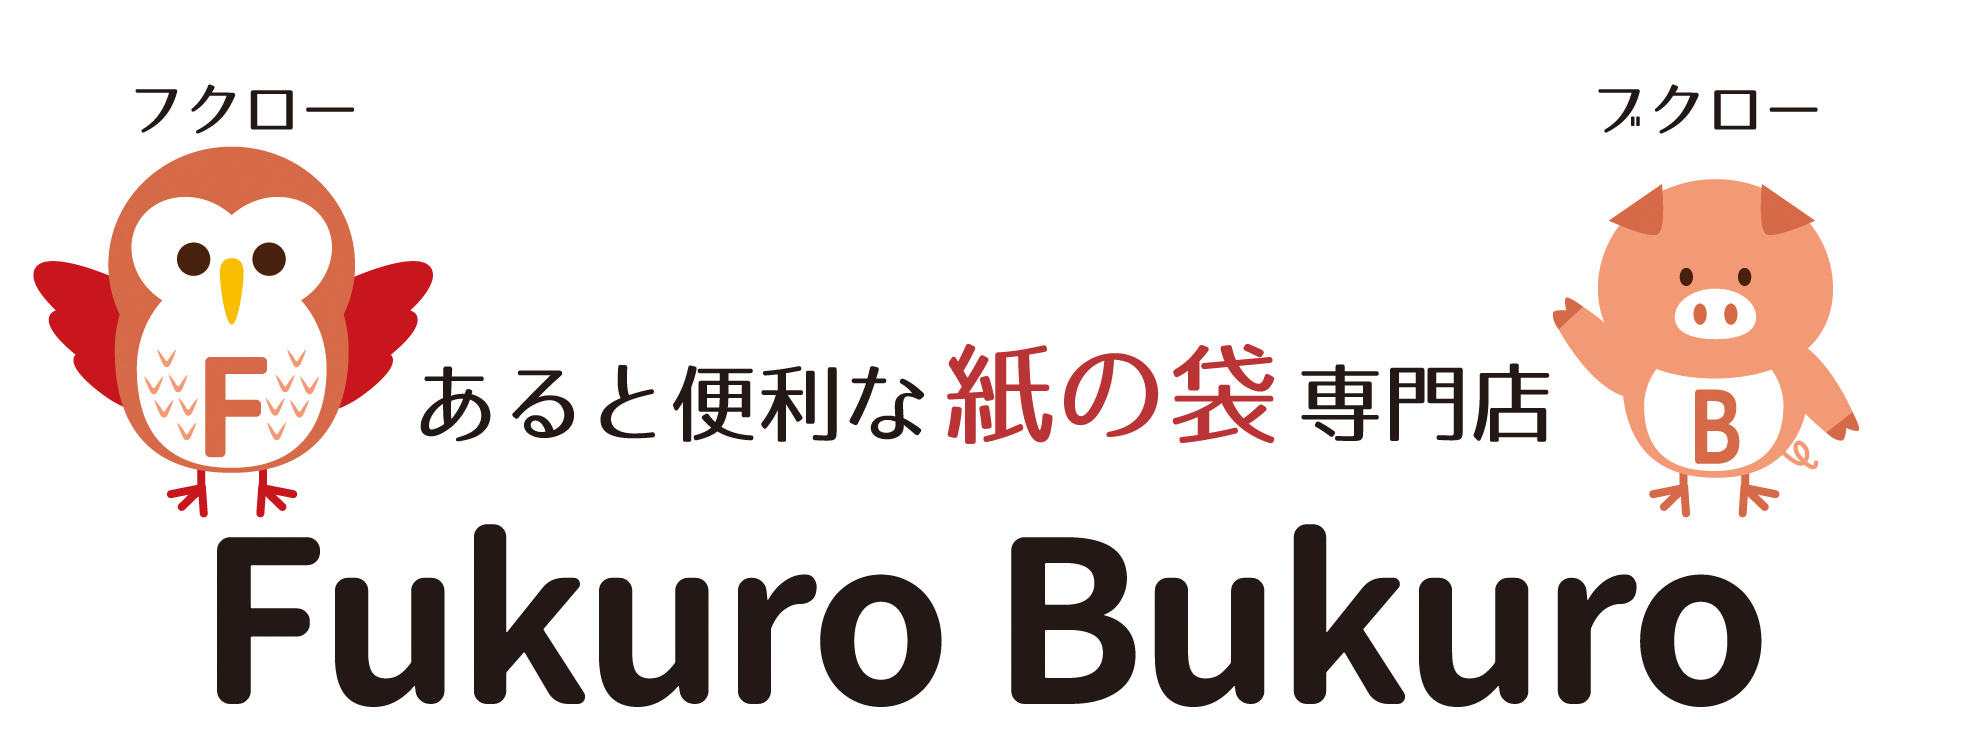 あると便利な紙の袋専門店 Fukuro Bukuro